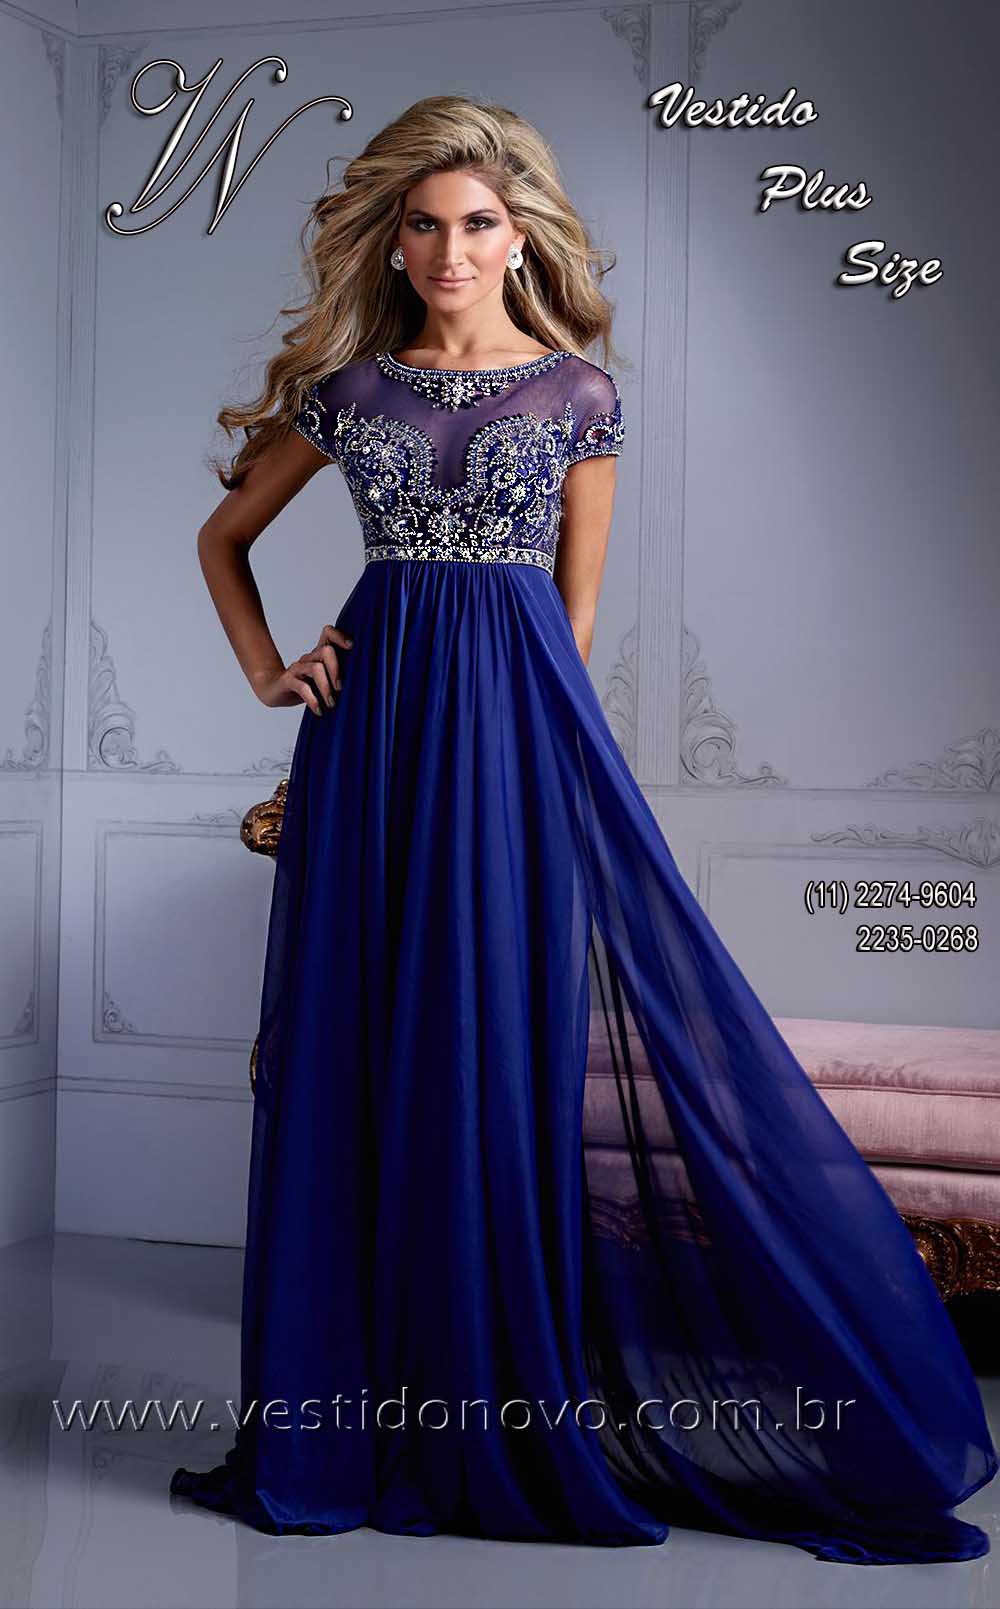 Vestido de festa  plus size, azul royal com transparencia, brilho e pedraria, me da noiva,  tamanho grande  zona sul So Paulo